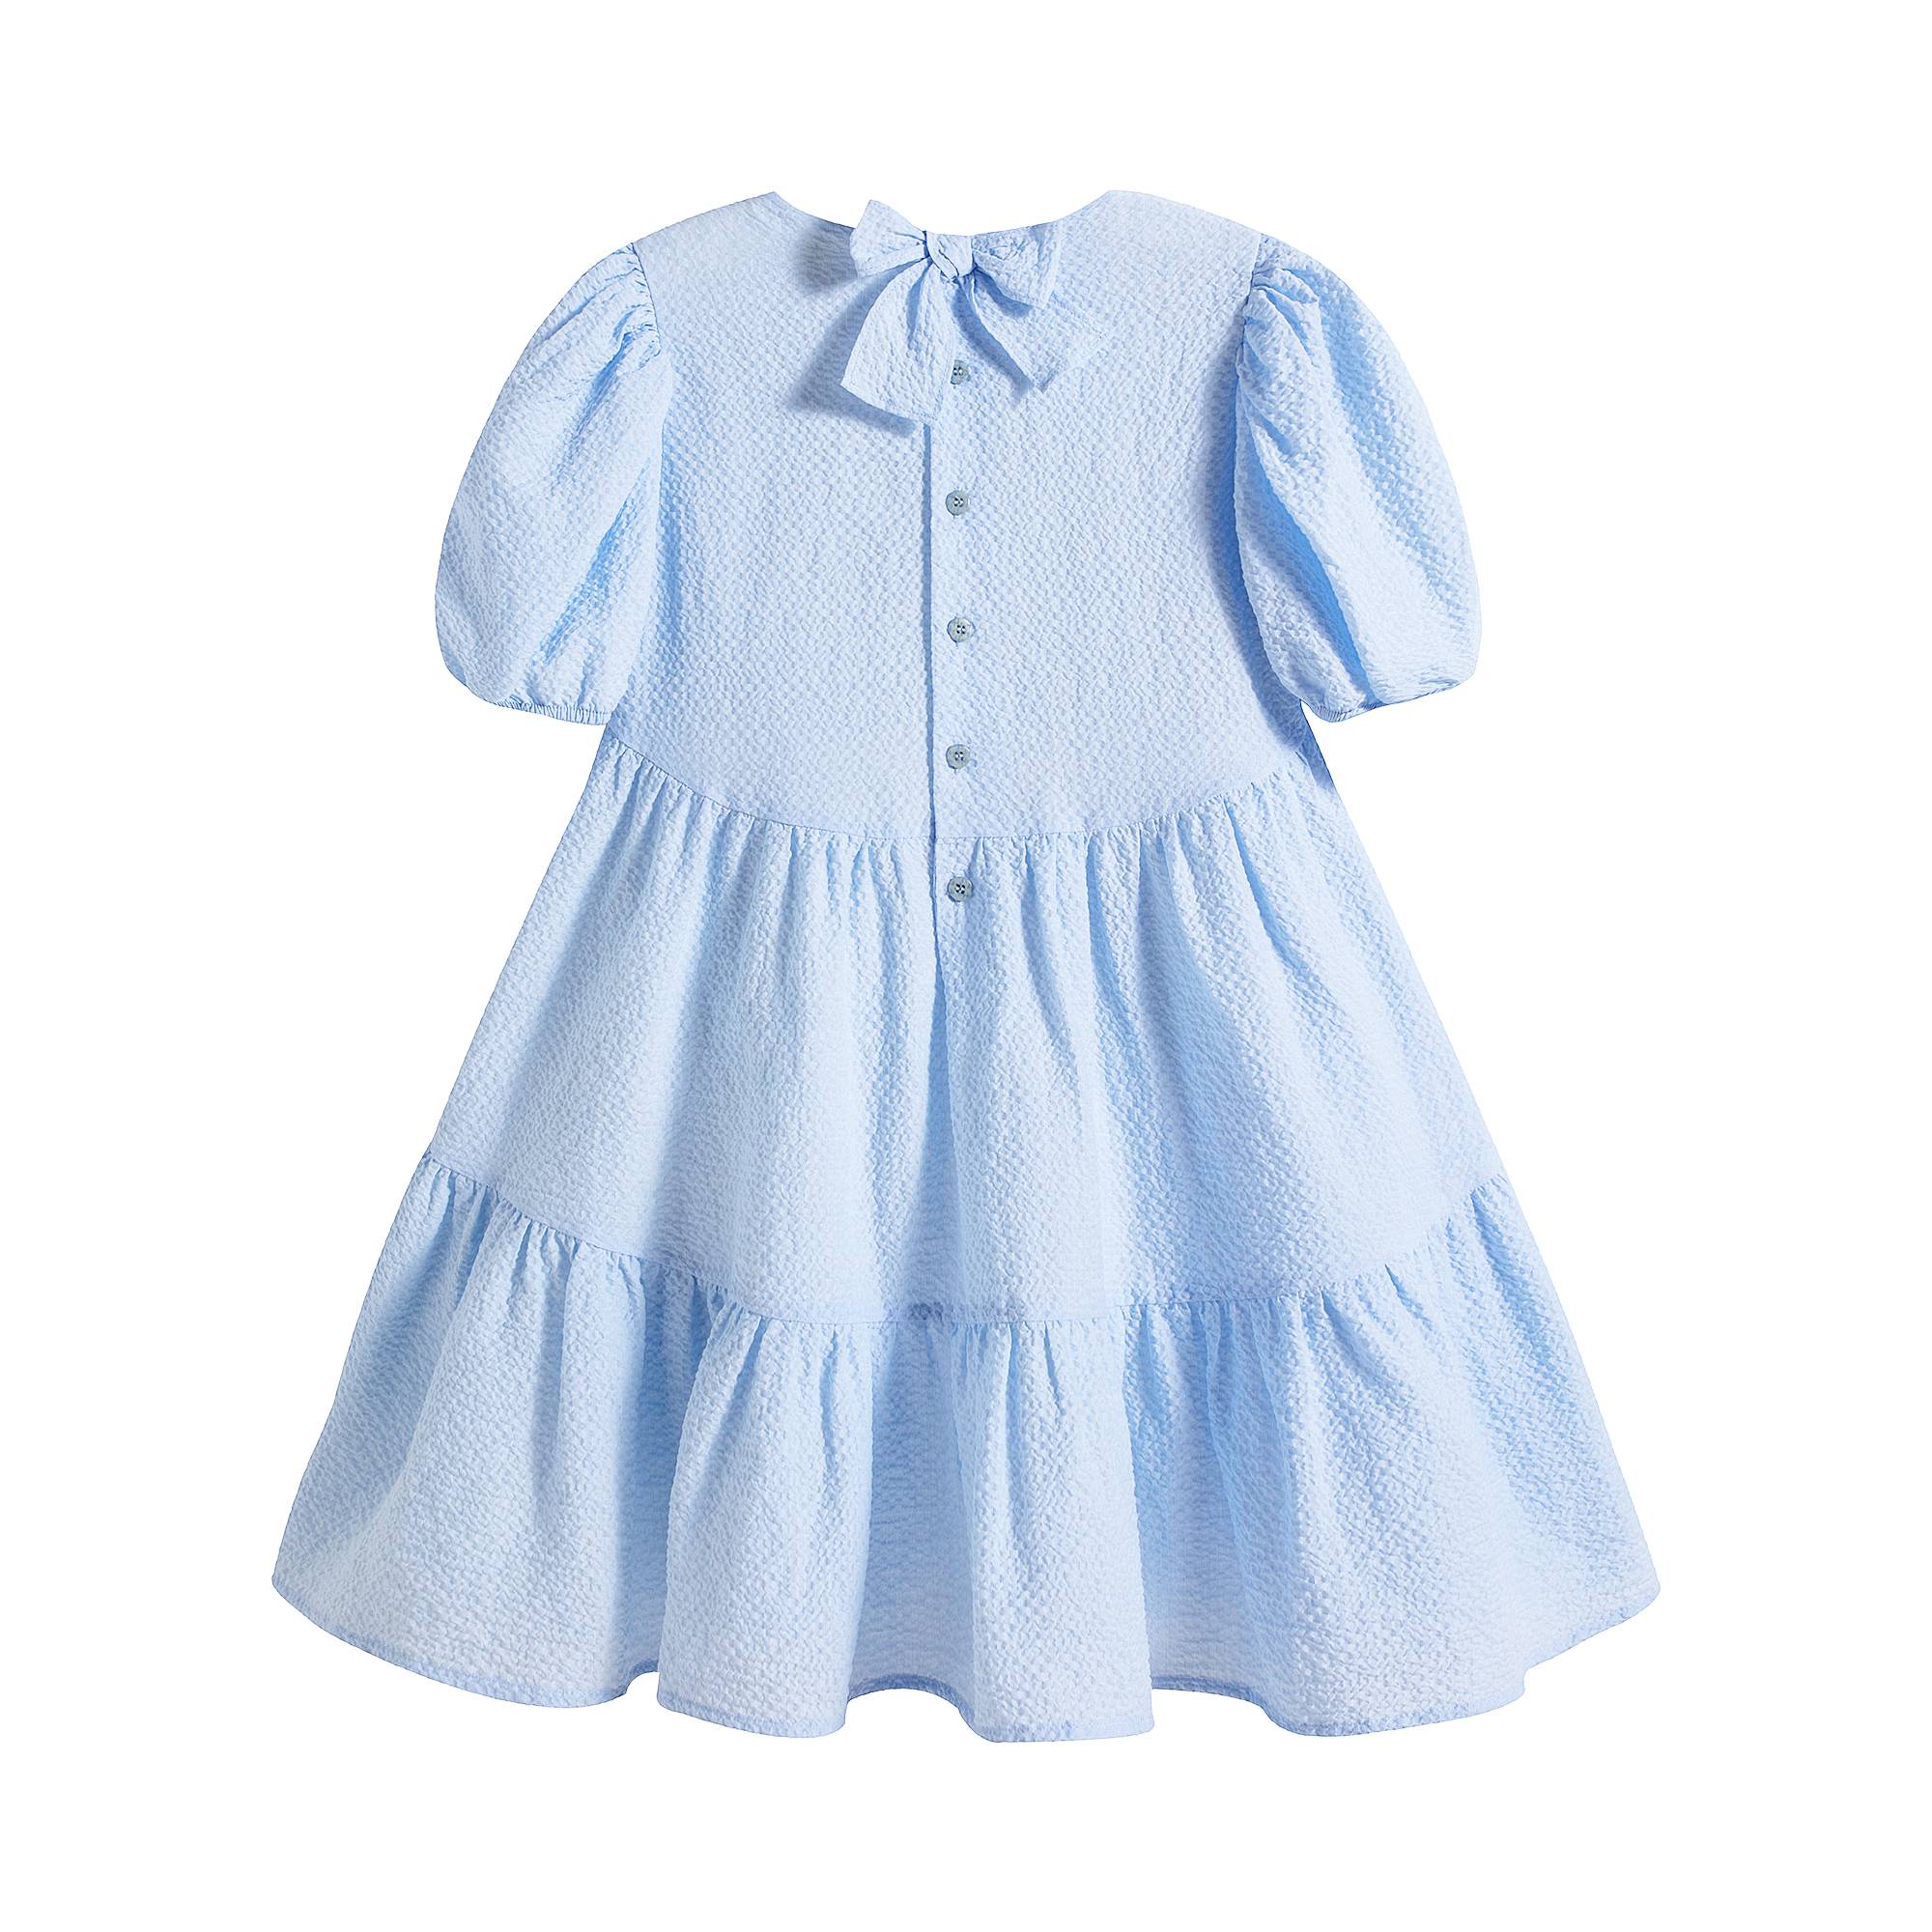 Girls Light Blue Cotton Dress